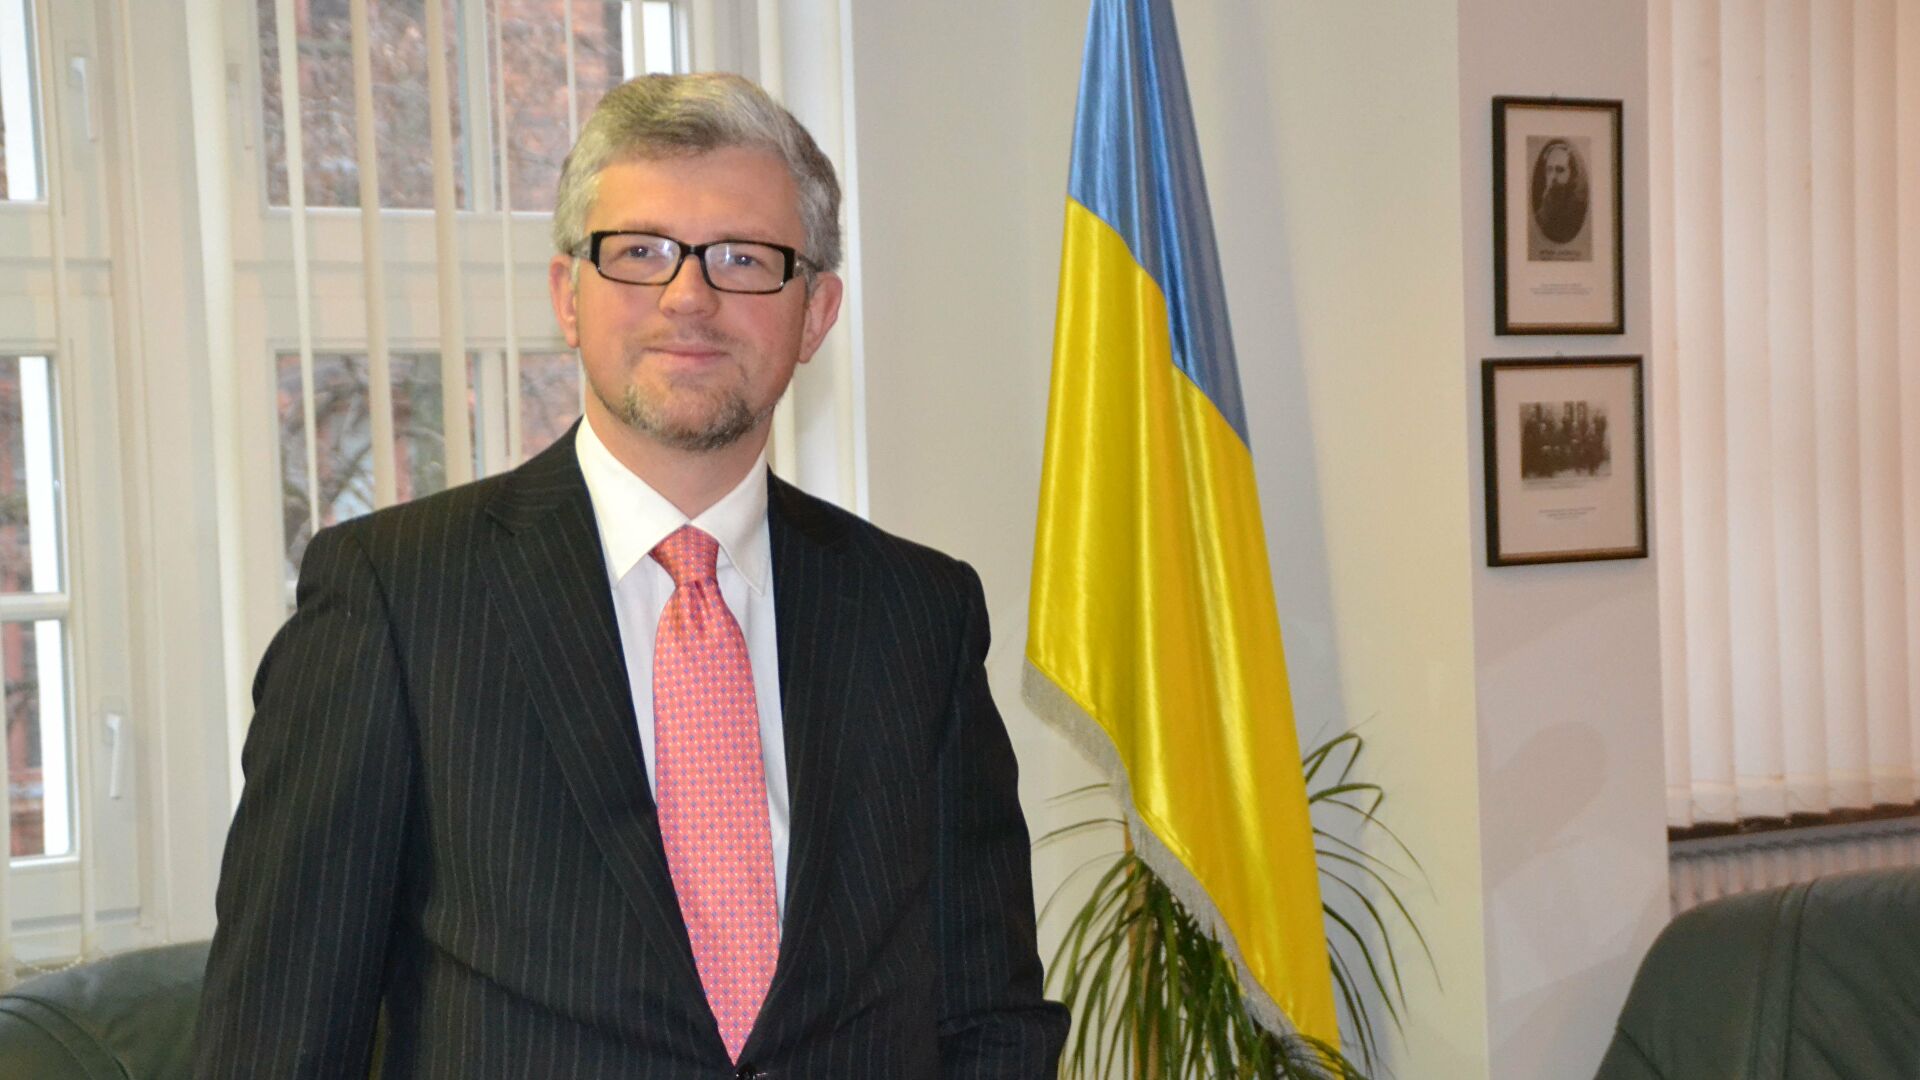 Посол Украины Мельник приветствовал отставку главкома ВМС Германии после его слов о Крыме